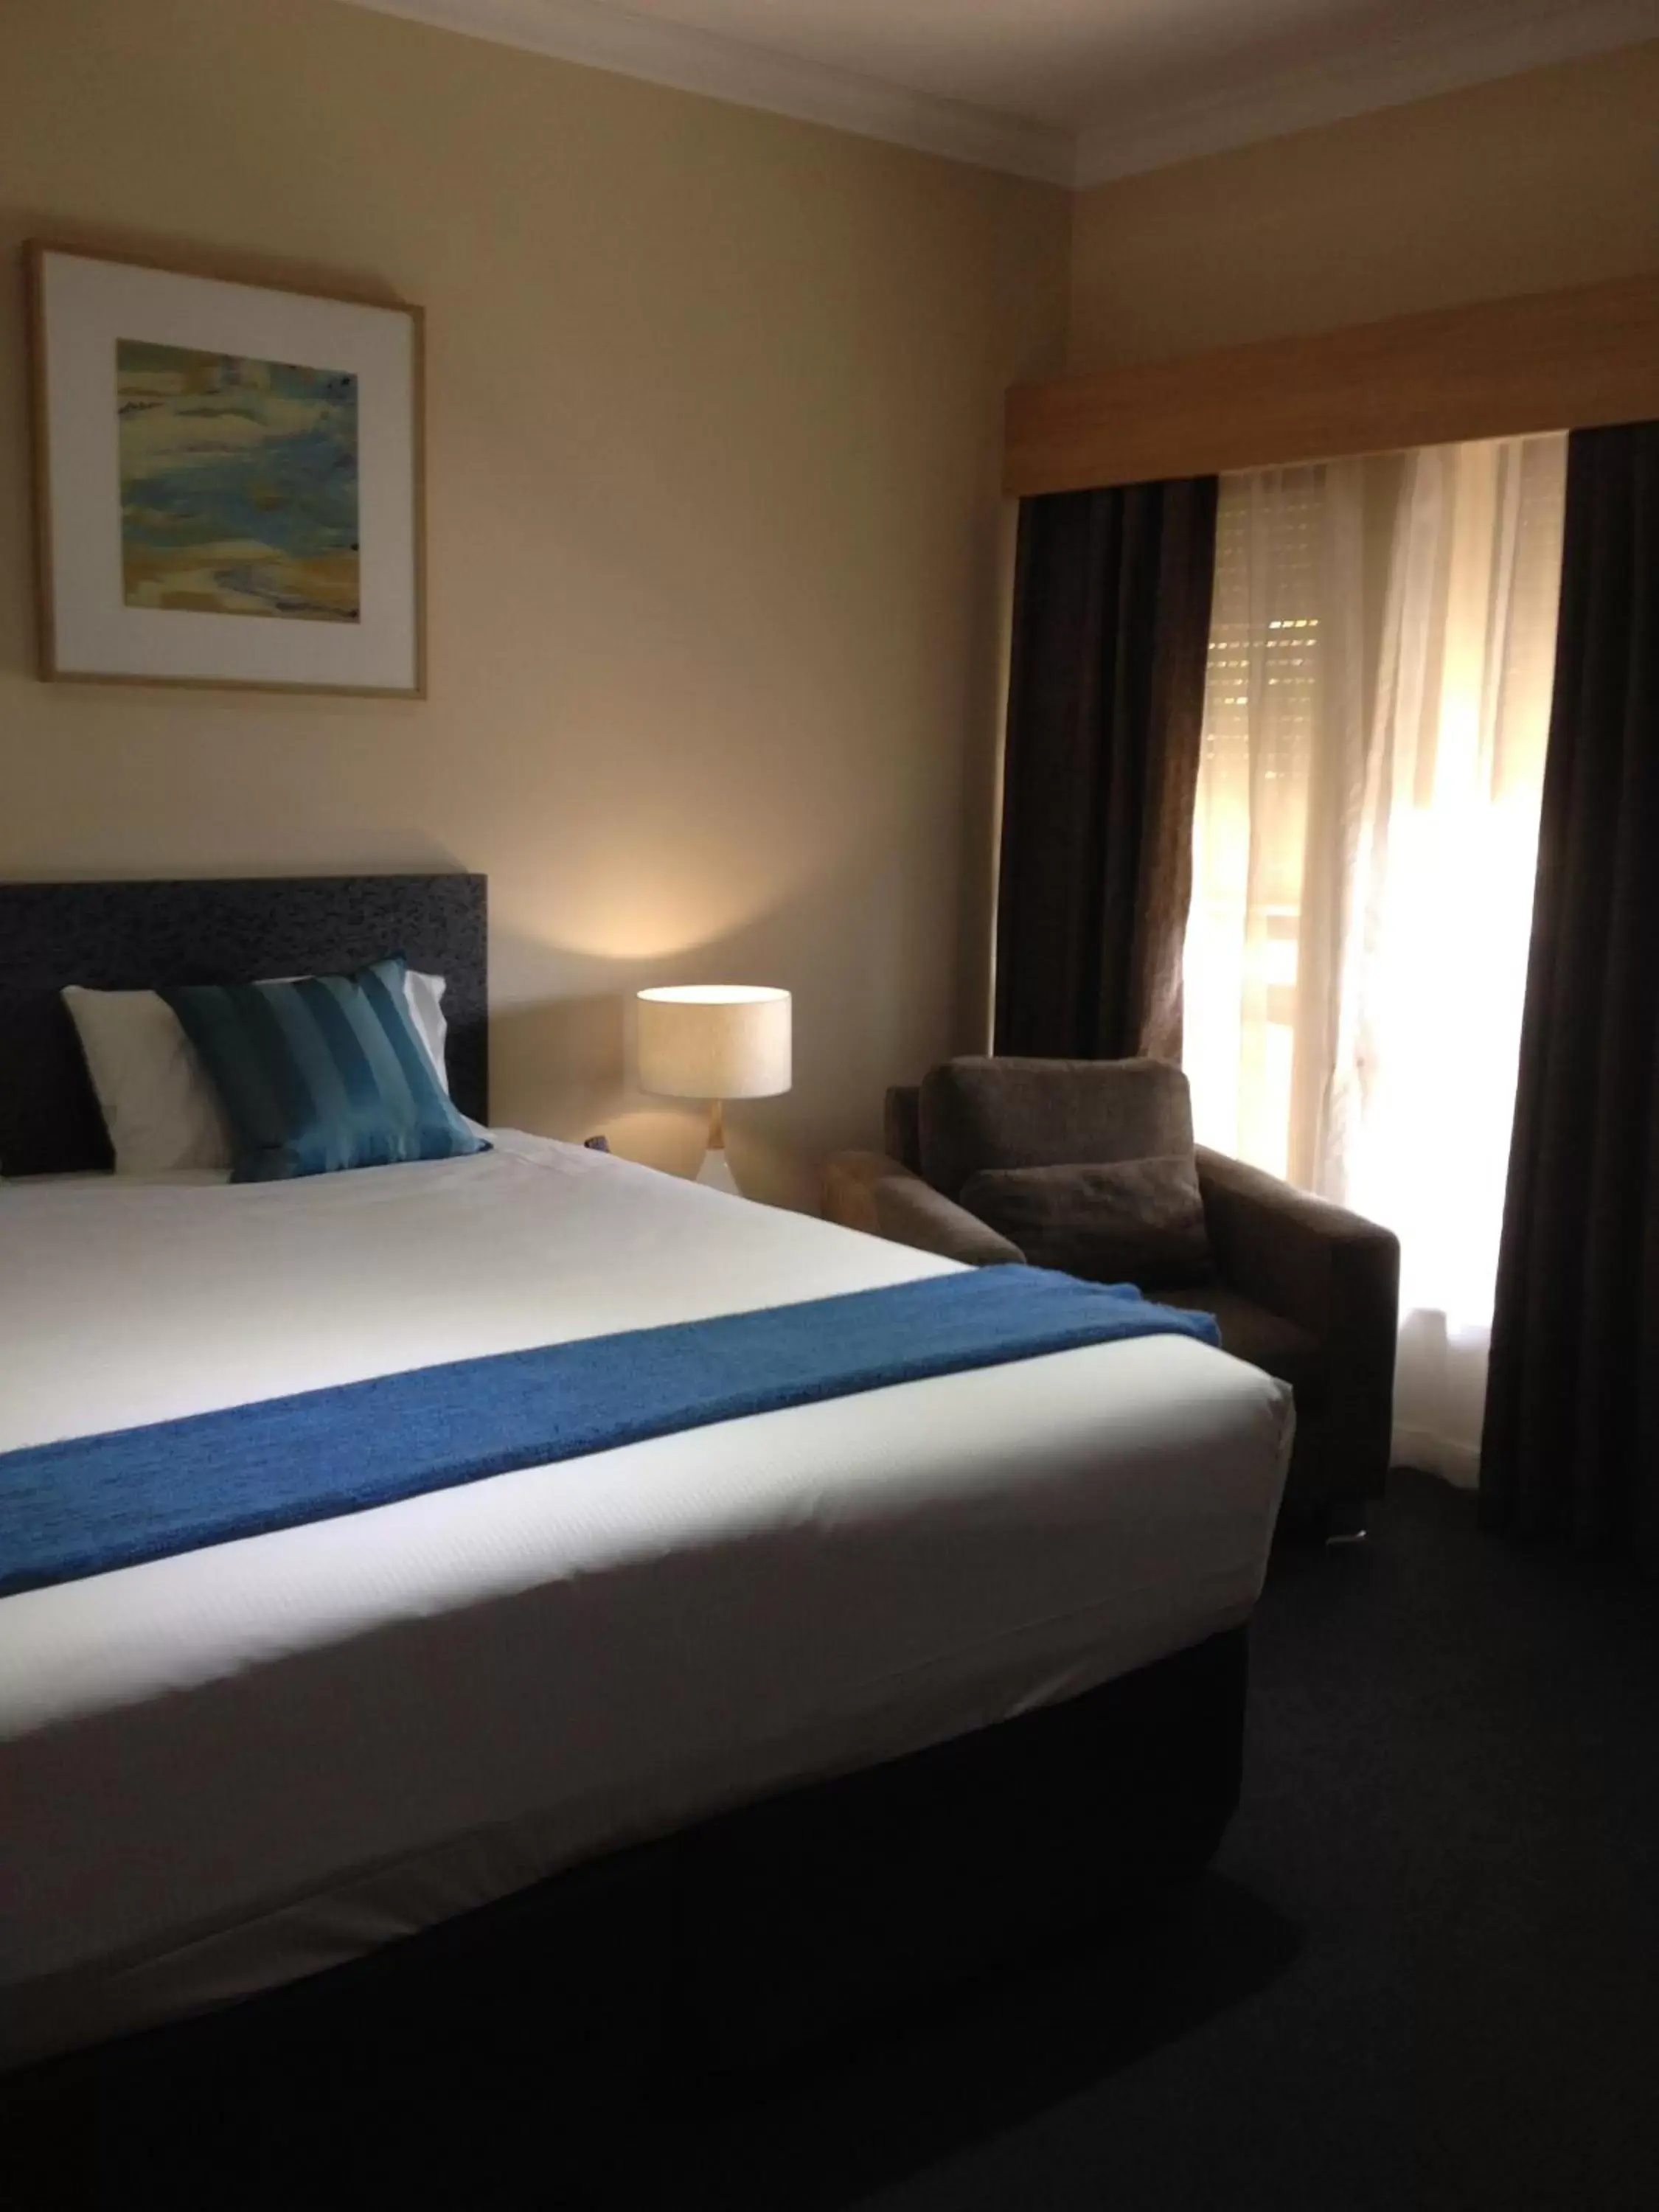 Shower, Bed in Comfort Inn & Suites Sombrero